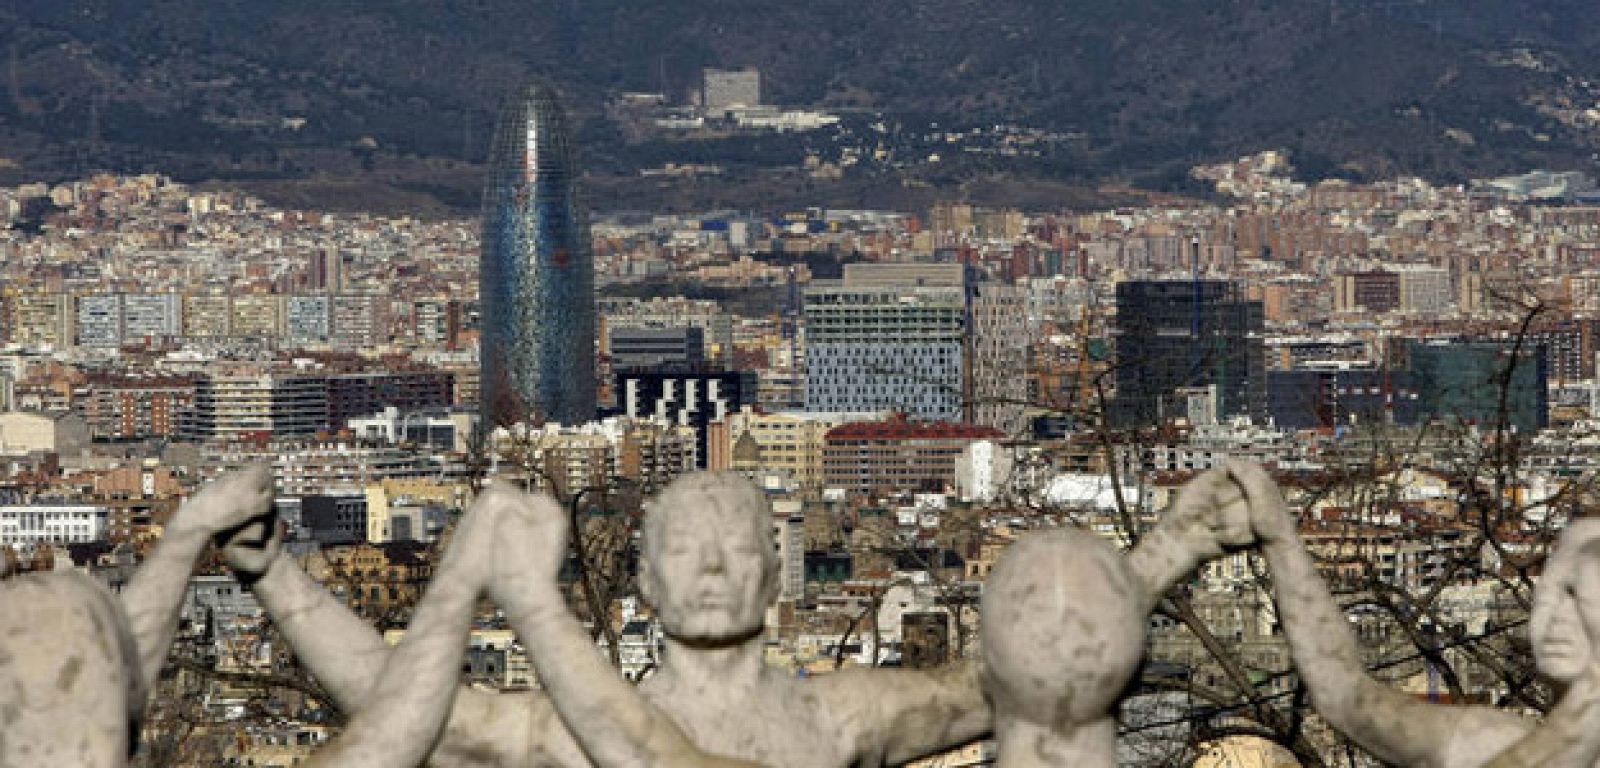 La ciudad de Barcelona vista desde Montjuich